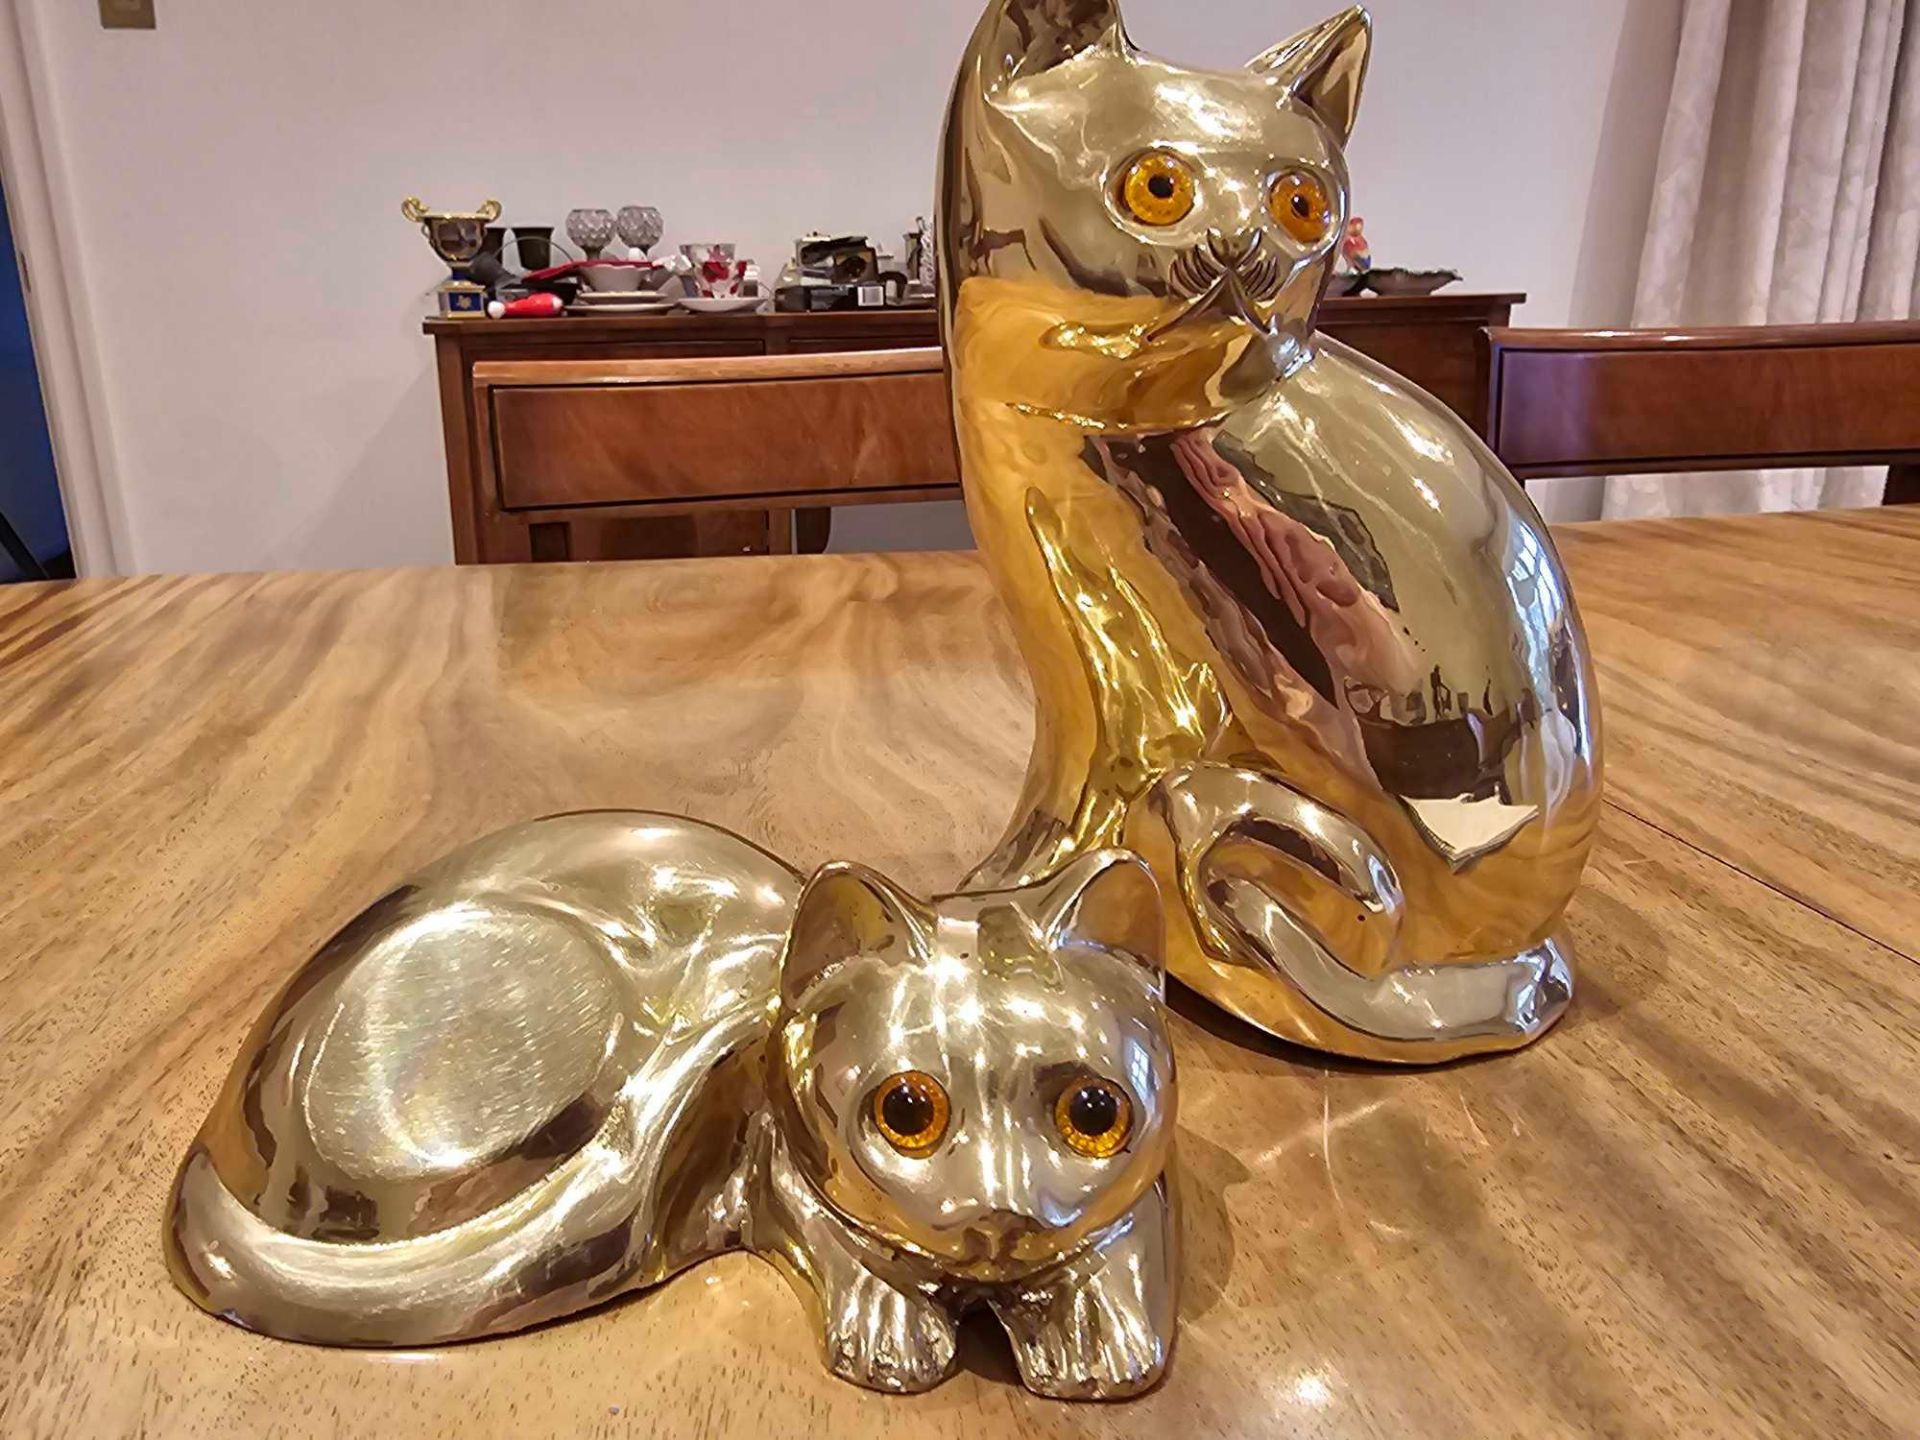 2 X Gold Ceramic Cat Figurines - Image 2 of 4